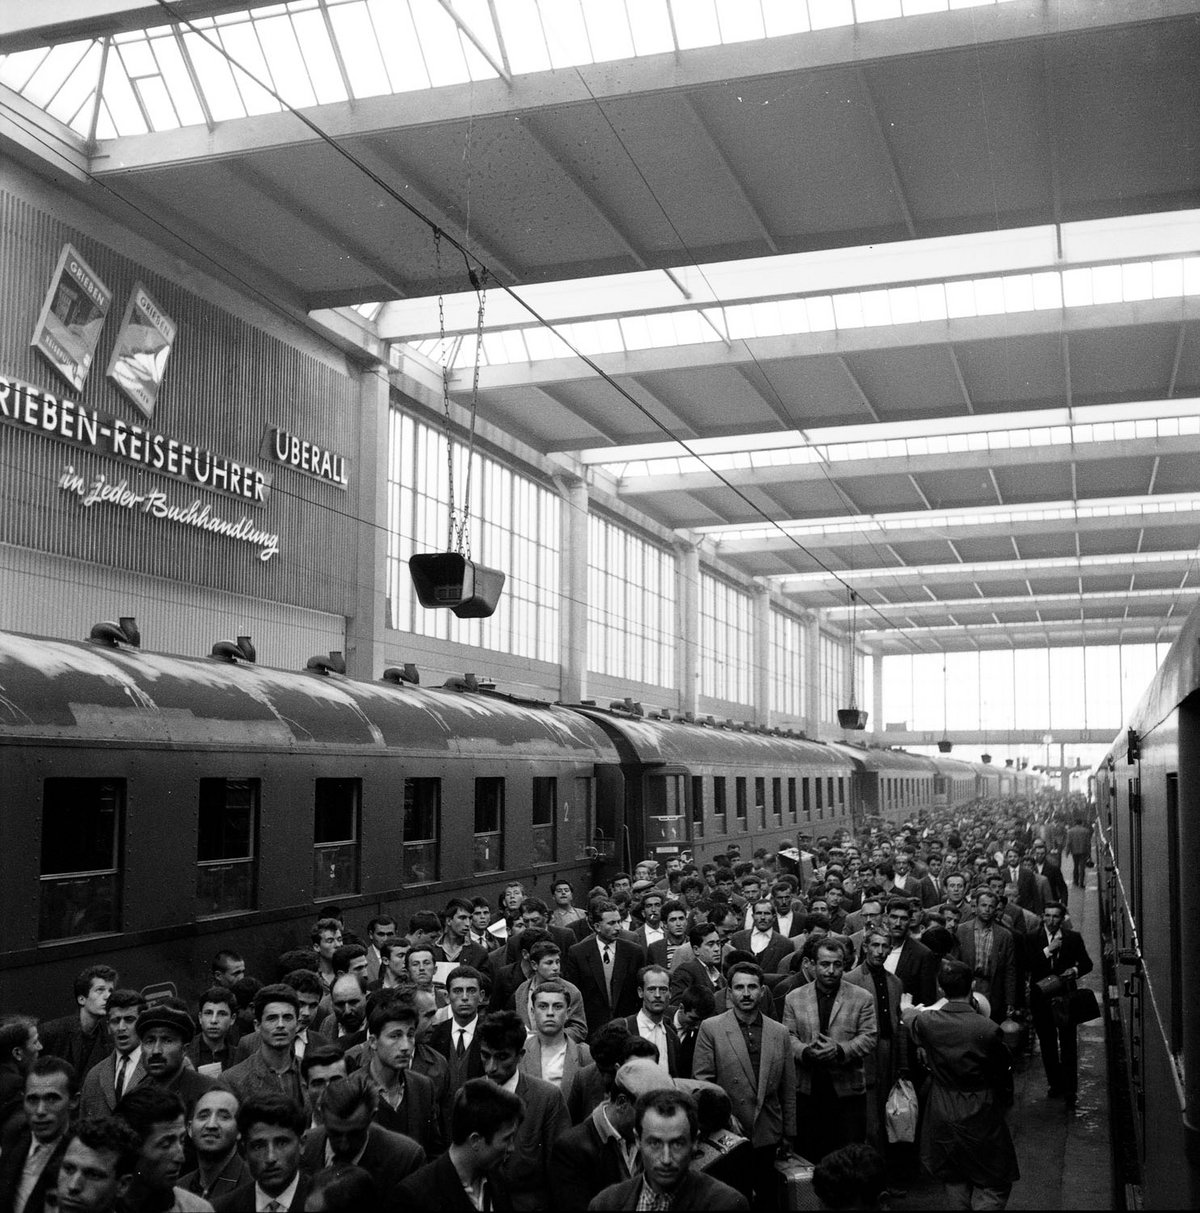 Schwarz-Weiß-Fotografie eines Bahnhofs mit einer drängelnden Menschenmasse. Zudem stehen leere Züge an den Gleisen.